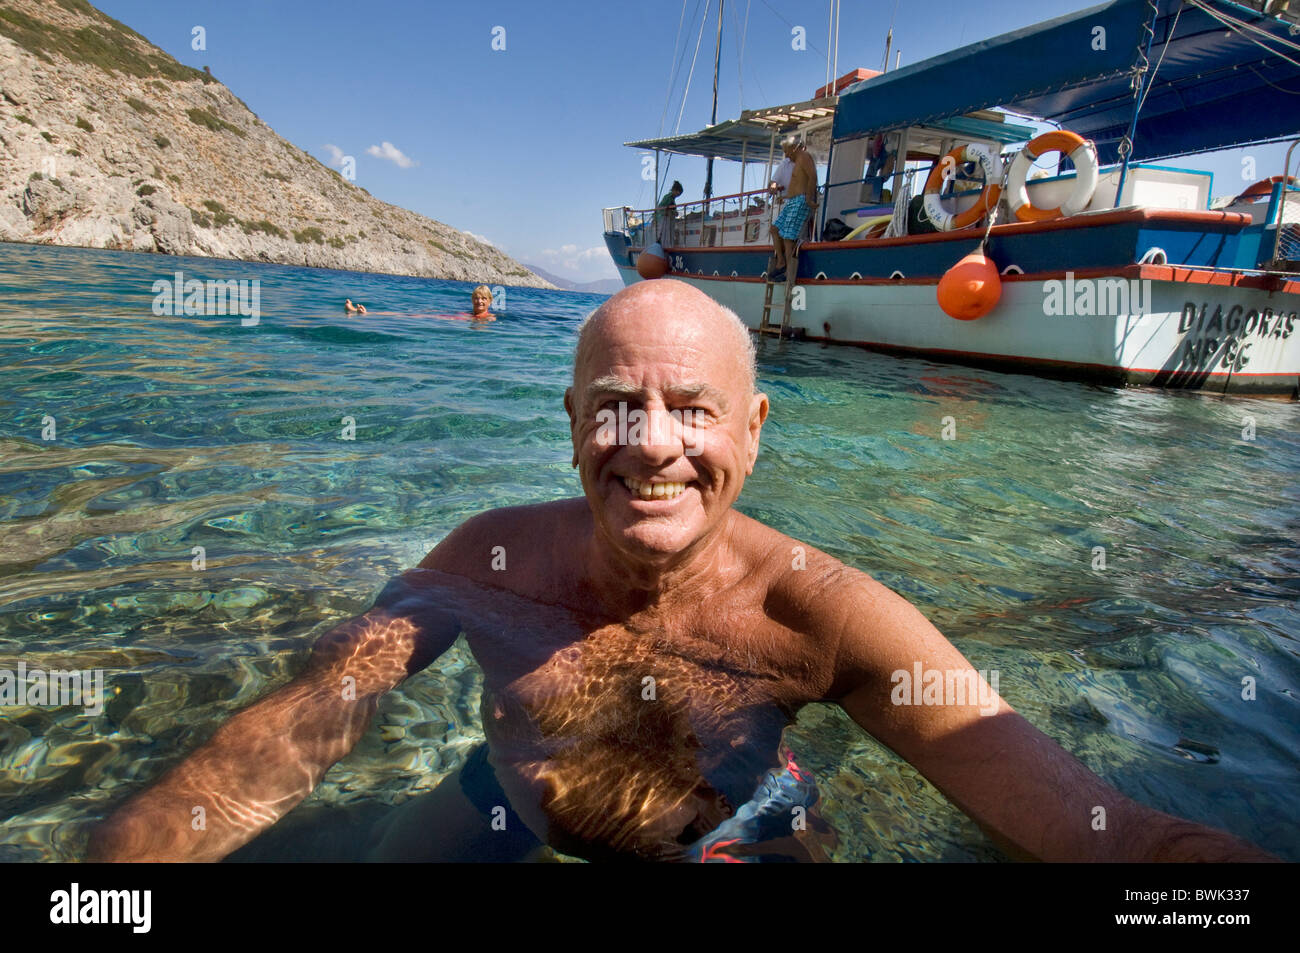 En forme, en bonne santé, tannées older man smiling at camera comme il nage dans la mer au large de l'île grecque de Symi Banque D'Images